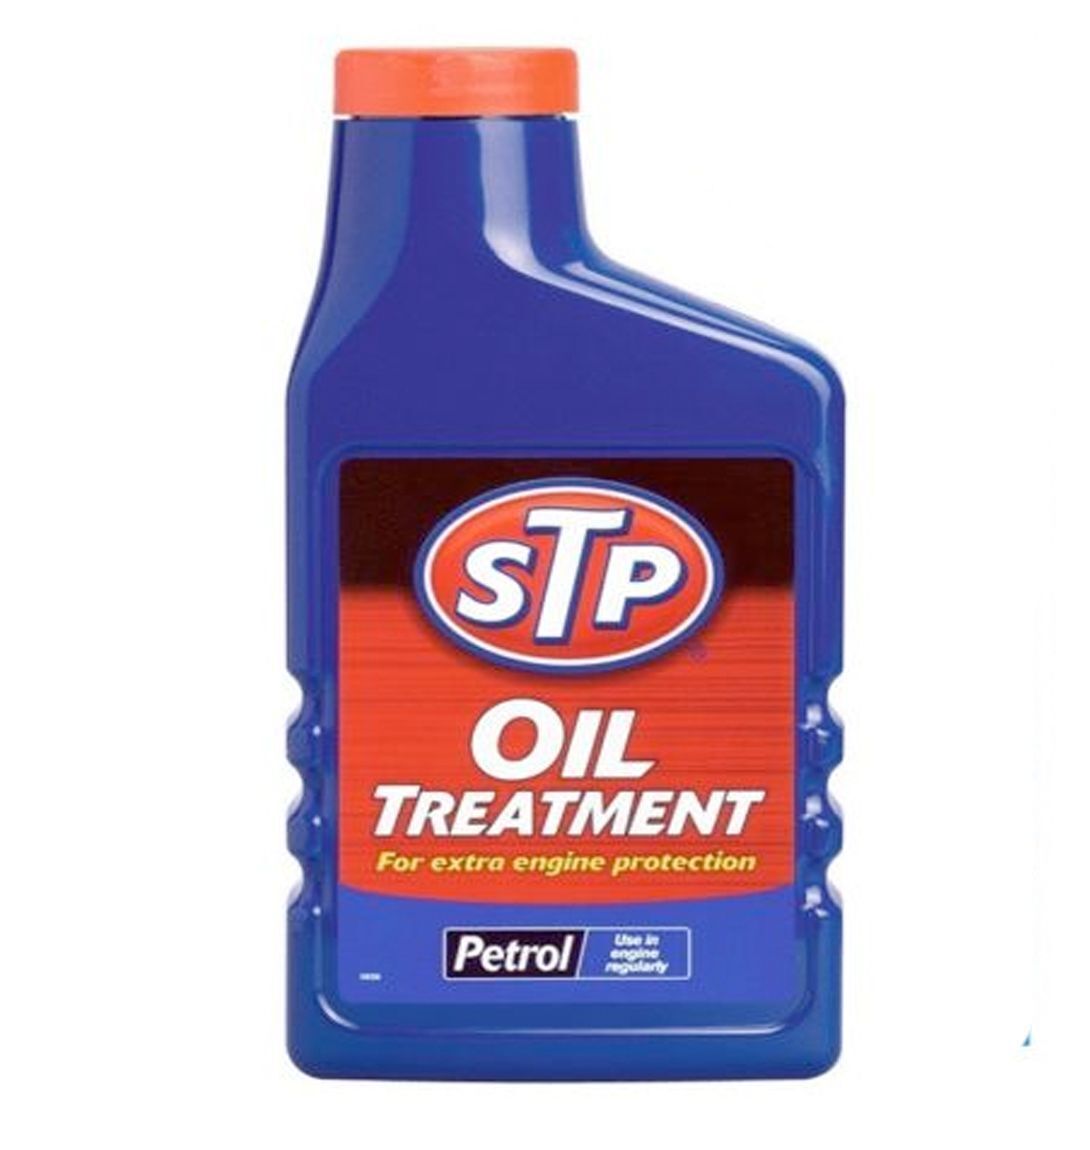 STP PETROL OIL TREATMENT 300ml